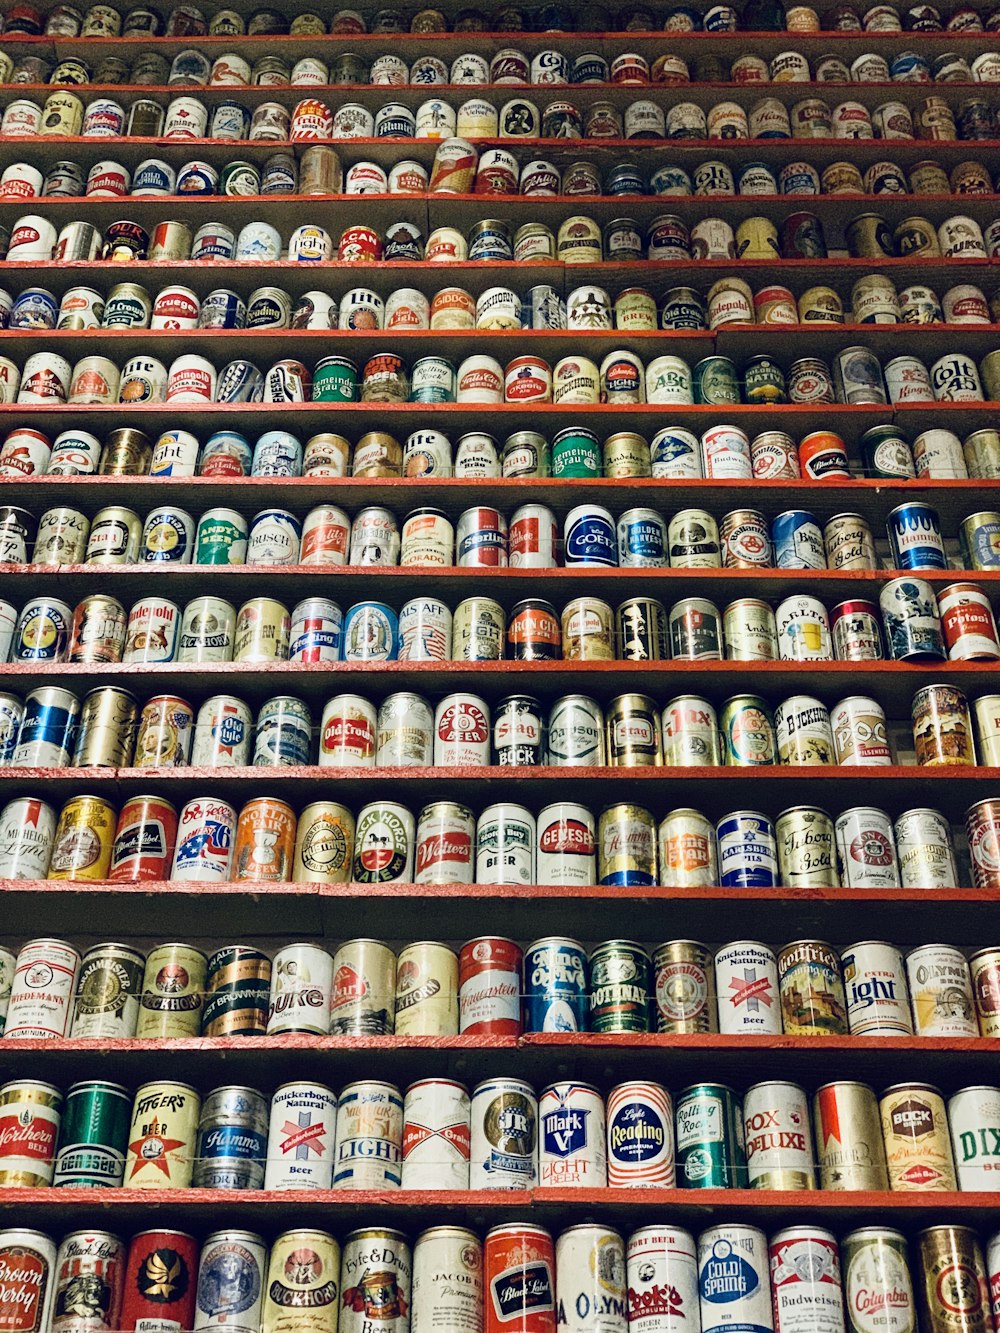 Lote de latas de bebidas de marcas variadas en el estante